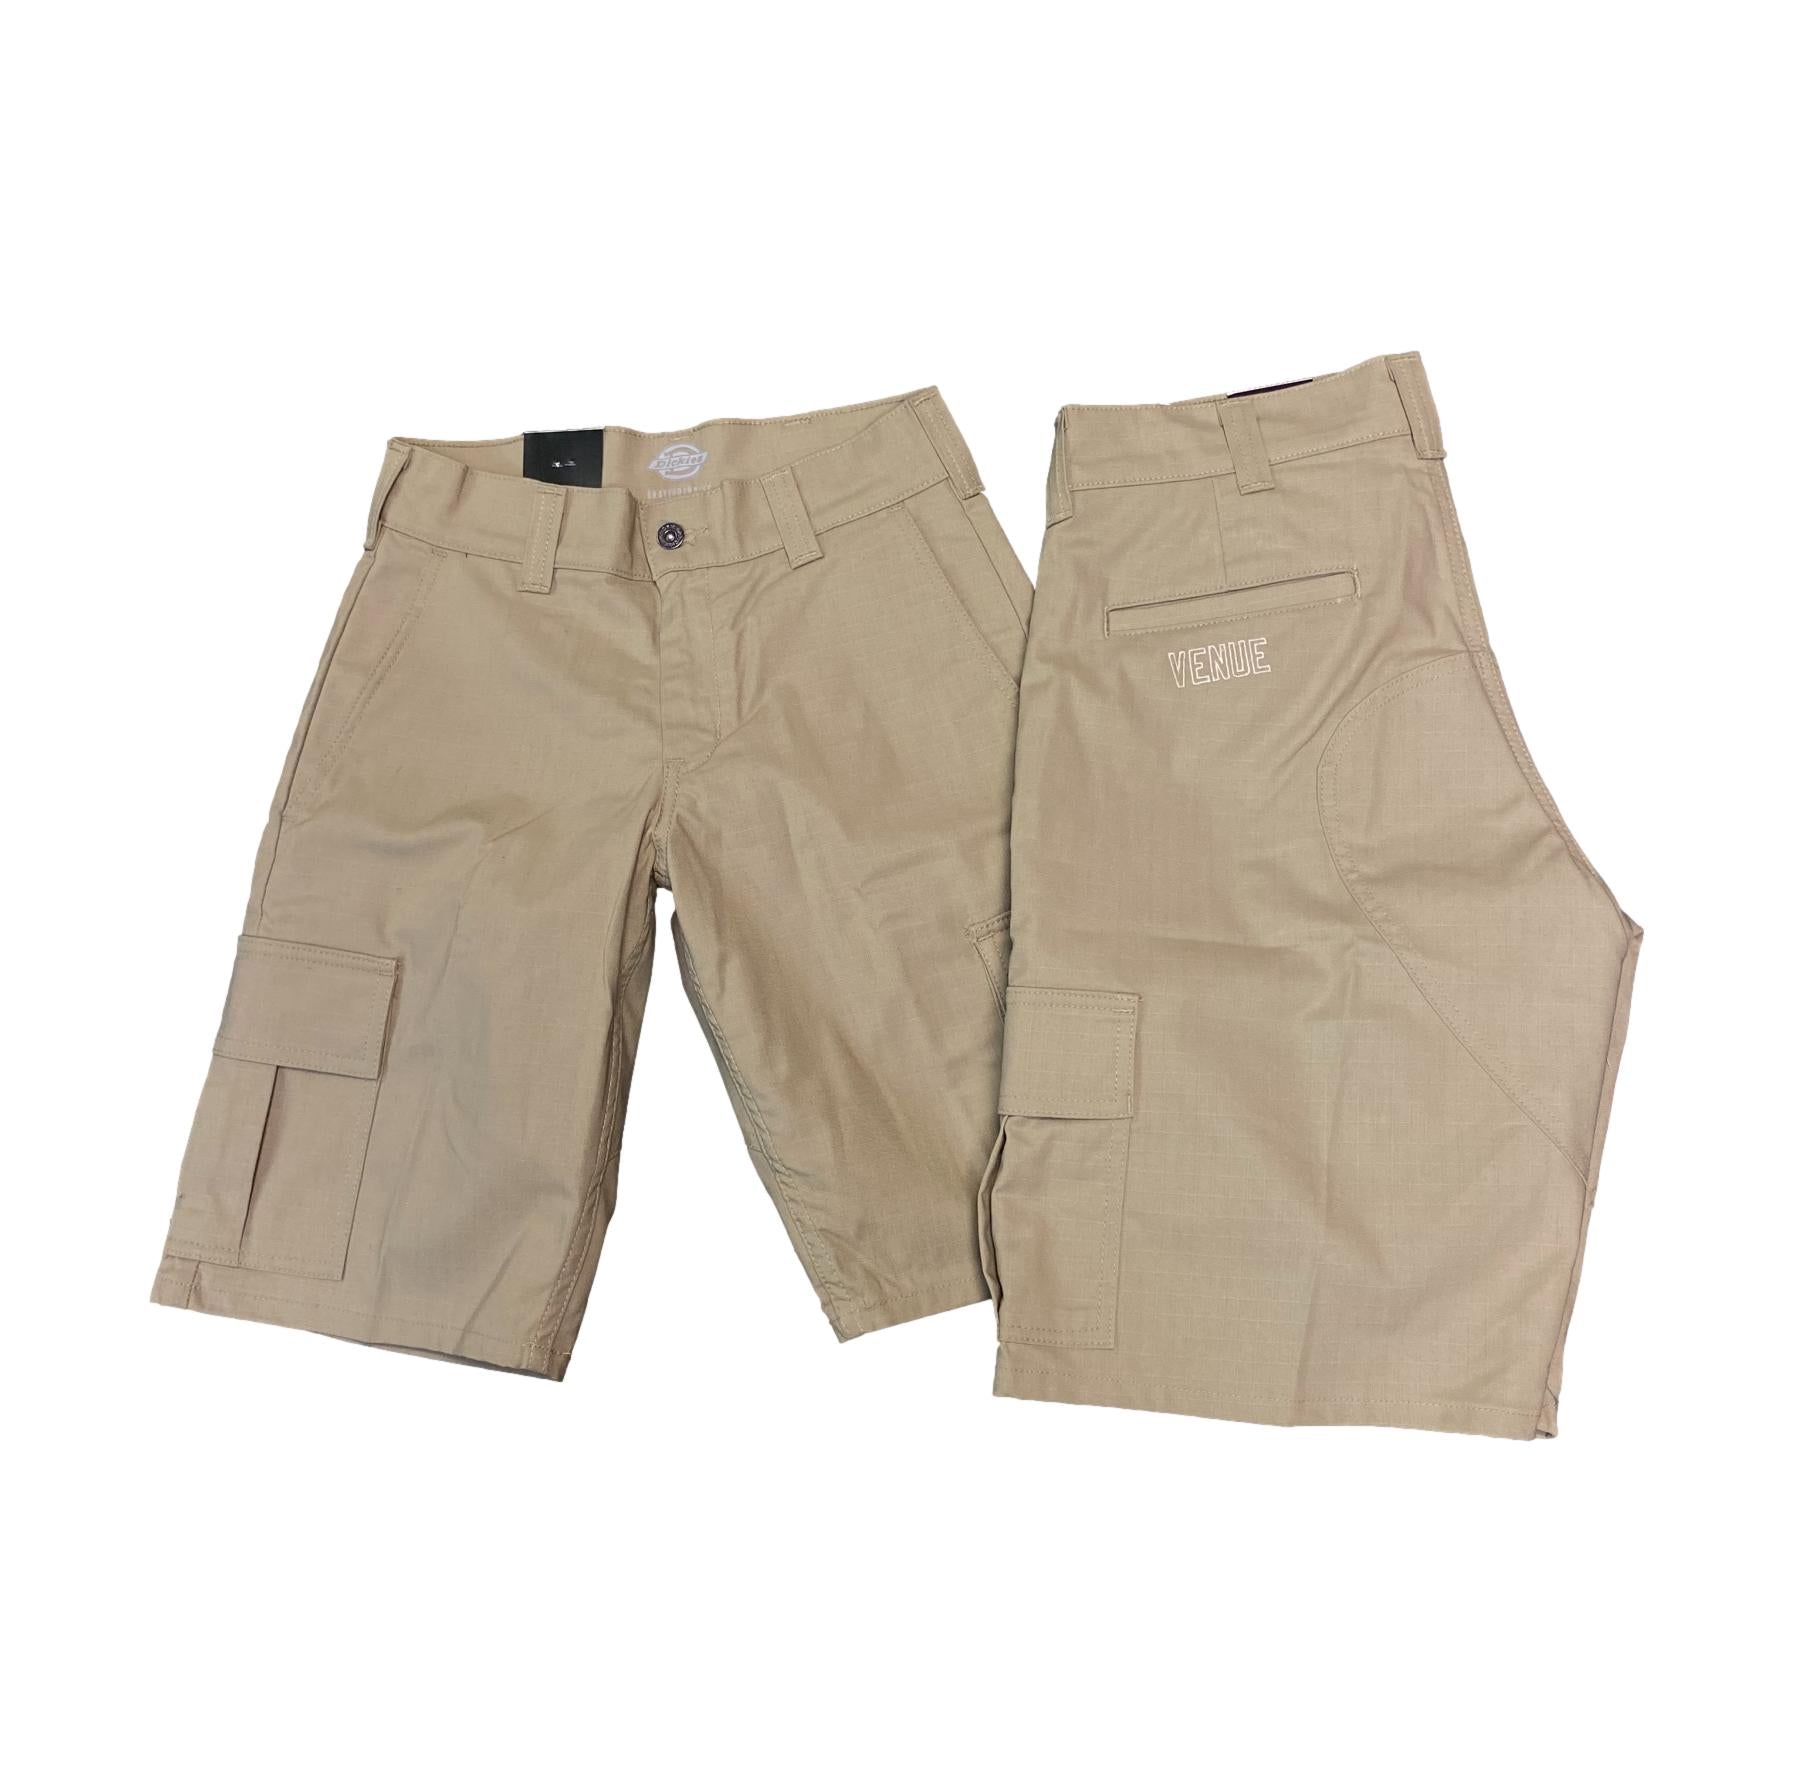 Cargo Pocket Pants | Pocket pants, Cargo pants, Pants